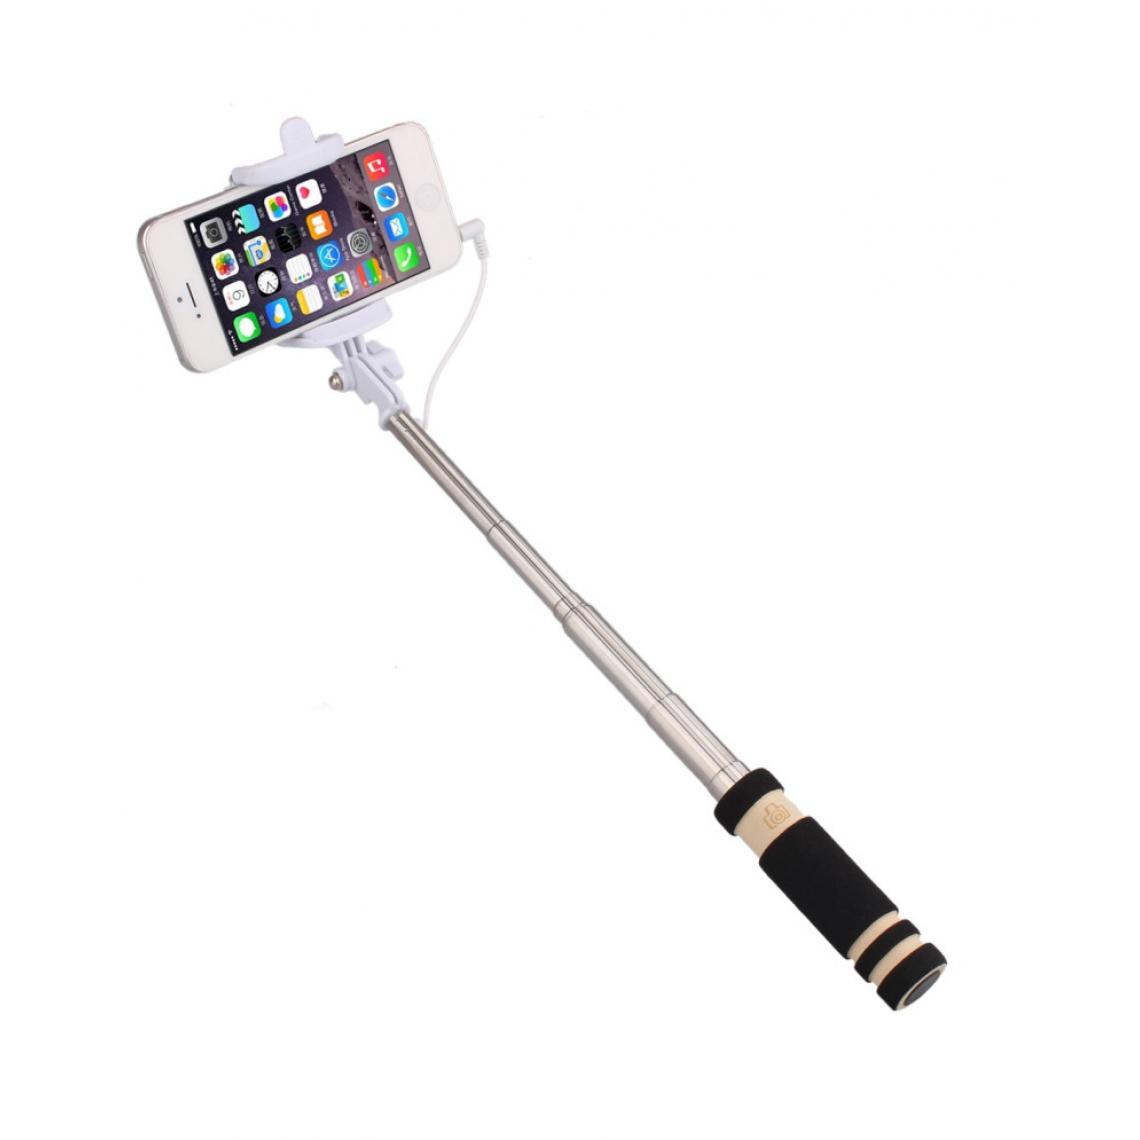 Shot - Mini Perche Selfie pour SONY Xperia 1 II Smartphone avec Cable Jack Selfie Stick Android IOS Reglable Bouton Photo (NOIR) - Autres accessoires smartphone